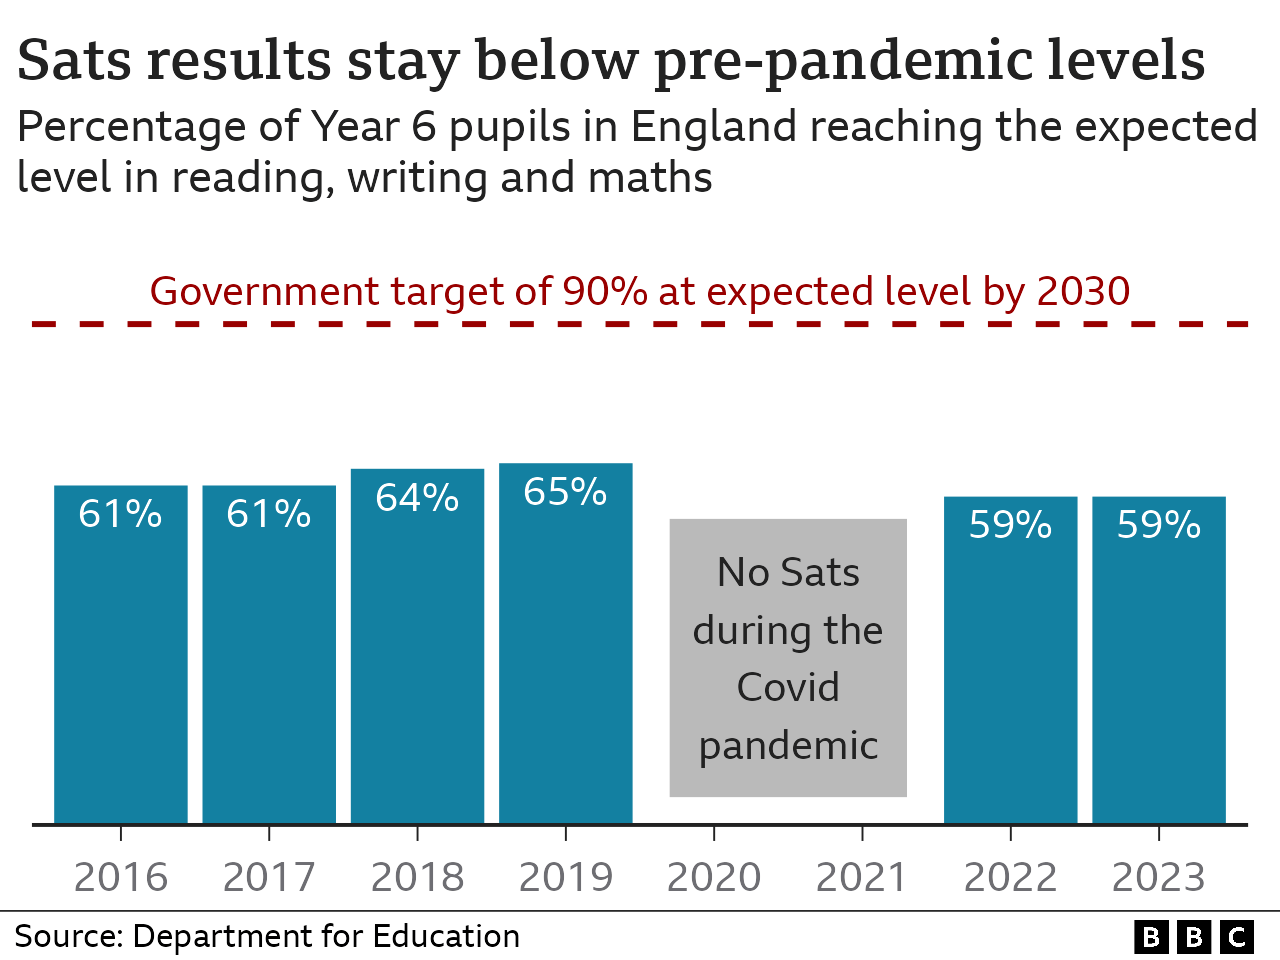 Гистограмма, показывающая, что процент учеников, достигших ожидаемого уровня на экзаменах для 6-го класса в Англии, остался таким же, как и в прошлом году, на уровне 59%, что ниже 65%, которые достигли стандарта до пандемии Covid.